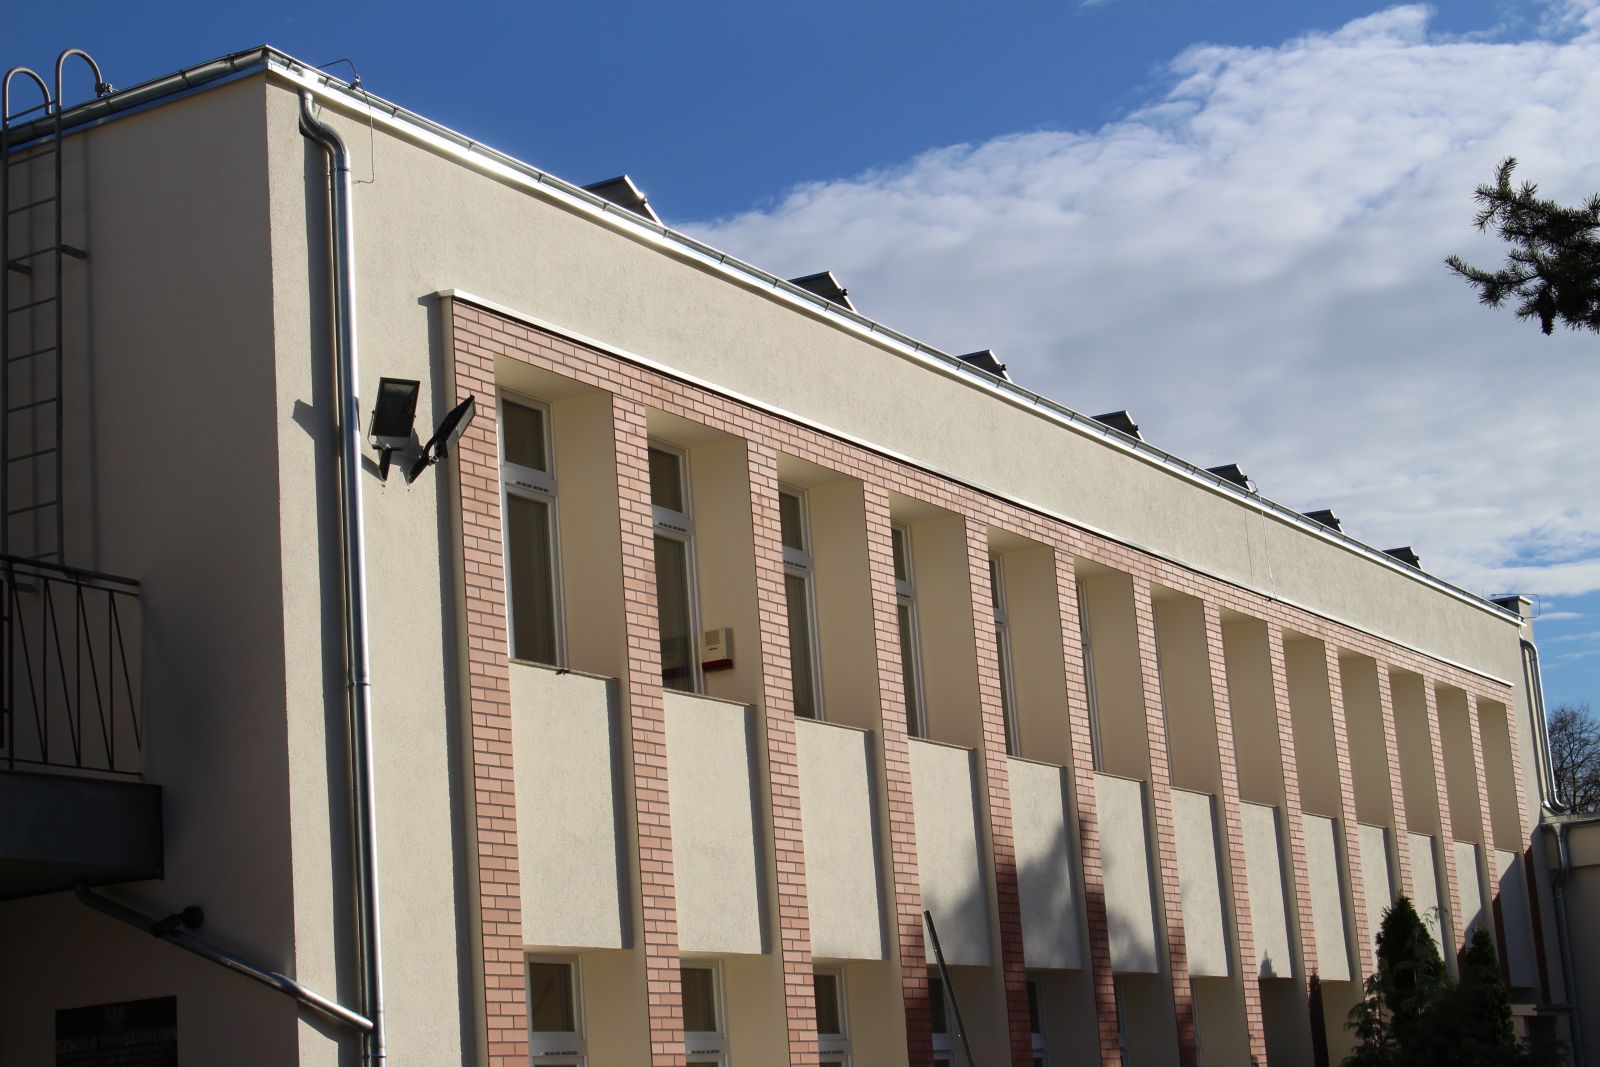 Zdjęcie przedstawia budynek Zespołu Szkolno-Przedszkolnego w Kamionnie z zewnątrz po termomodernizacji.